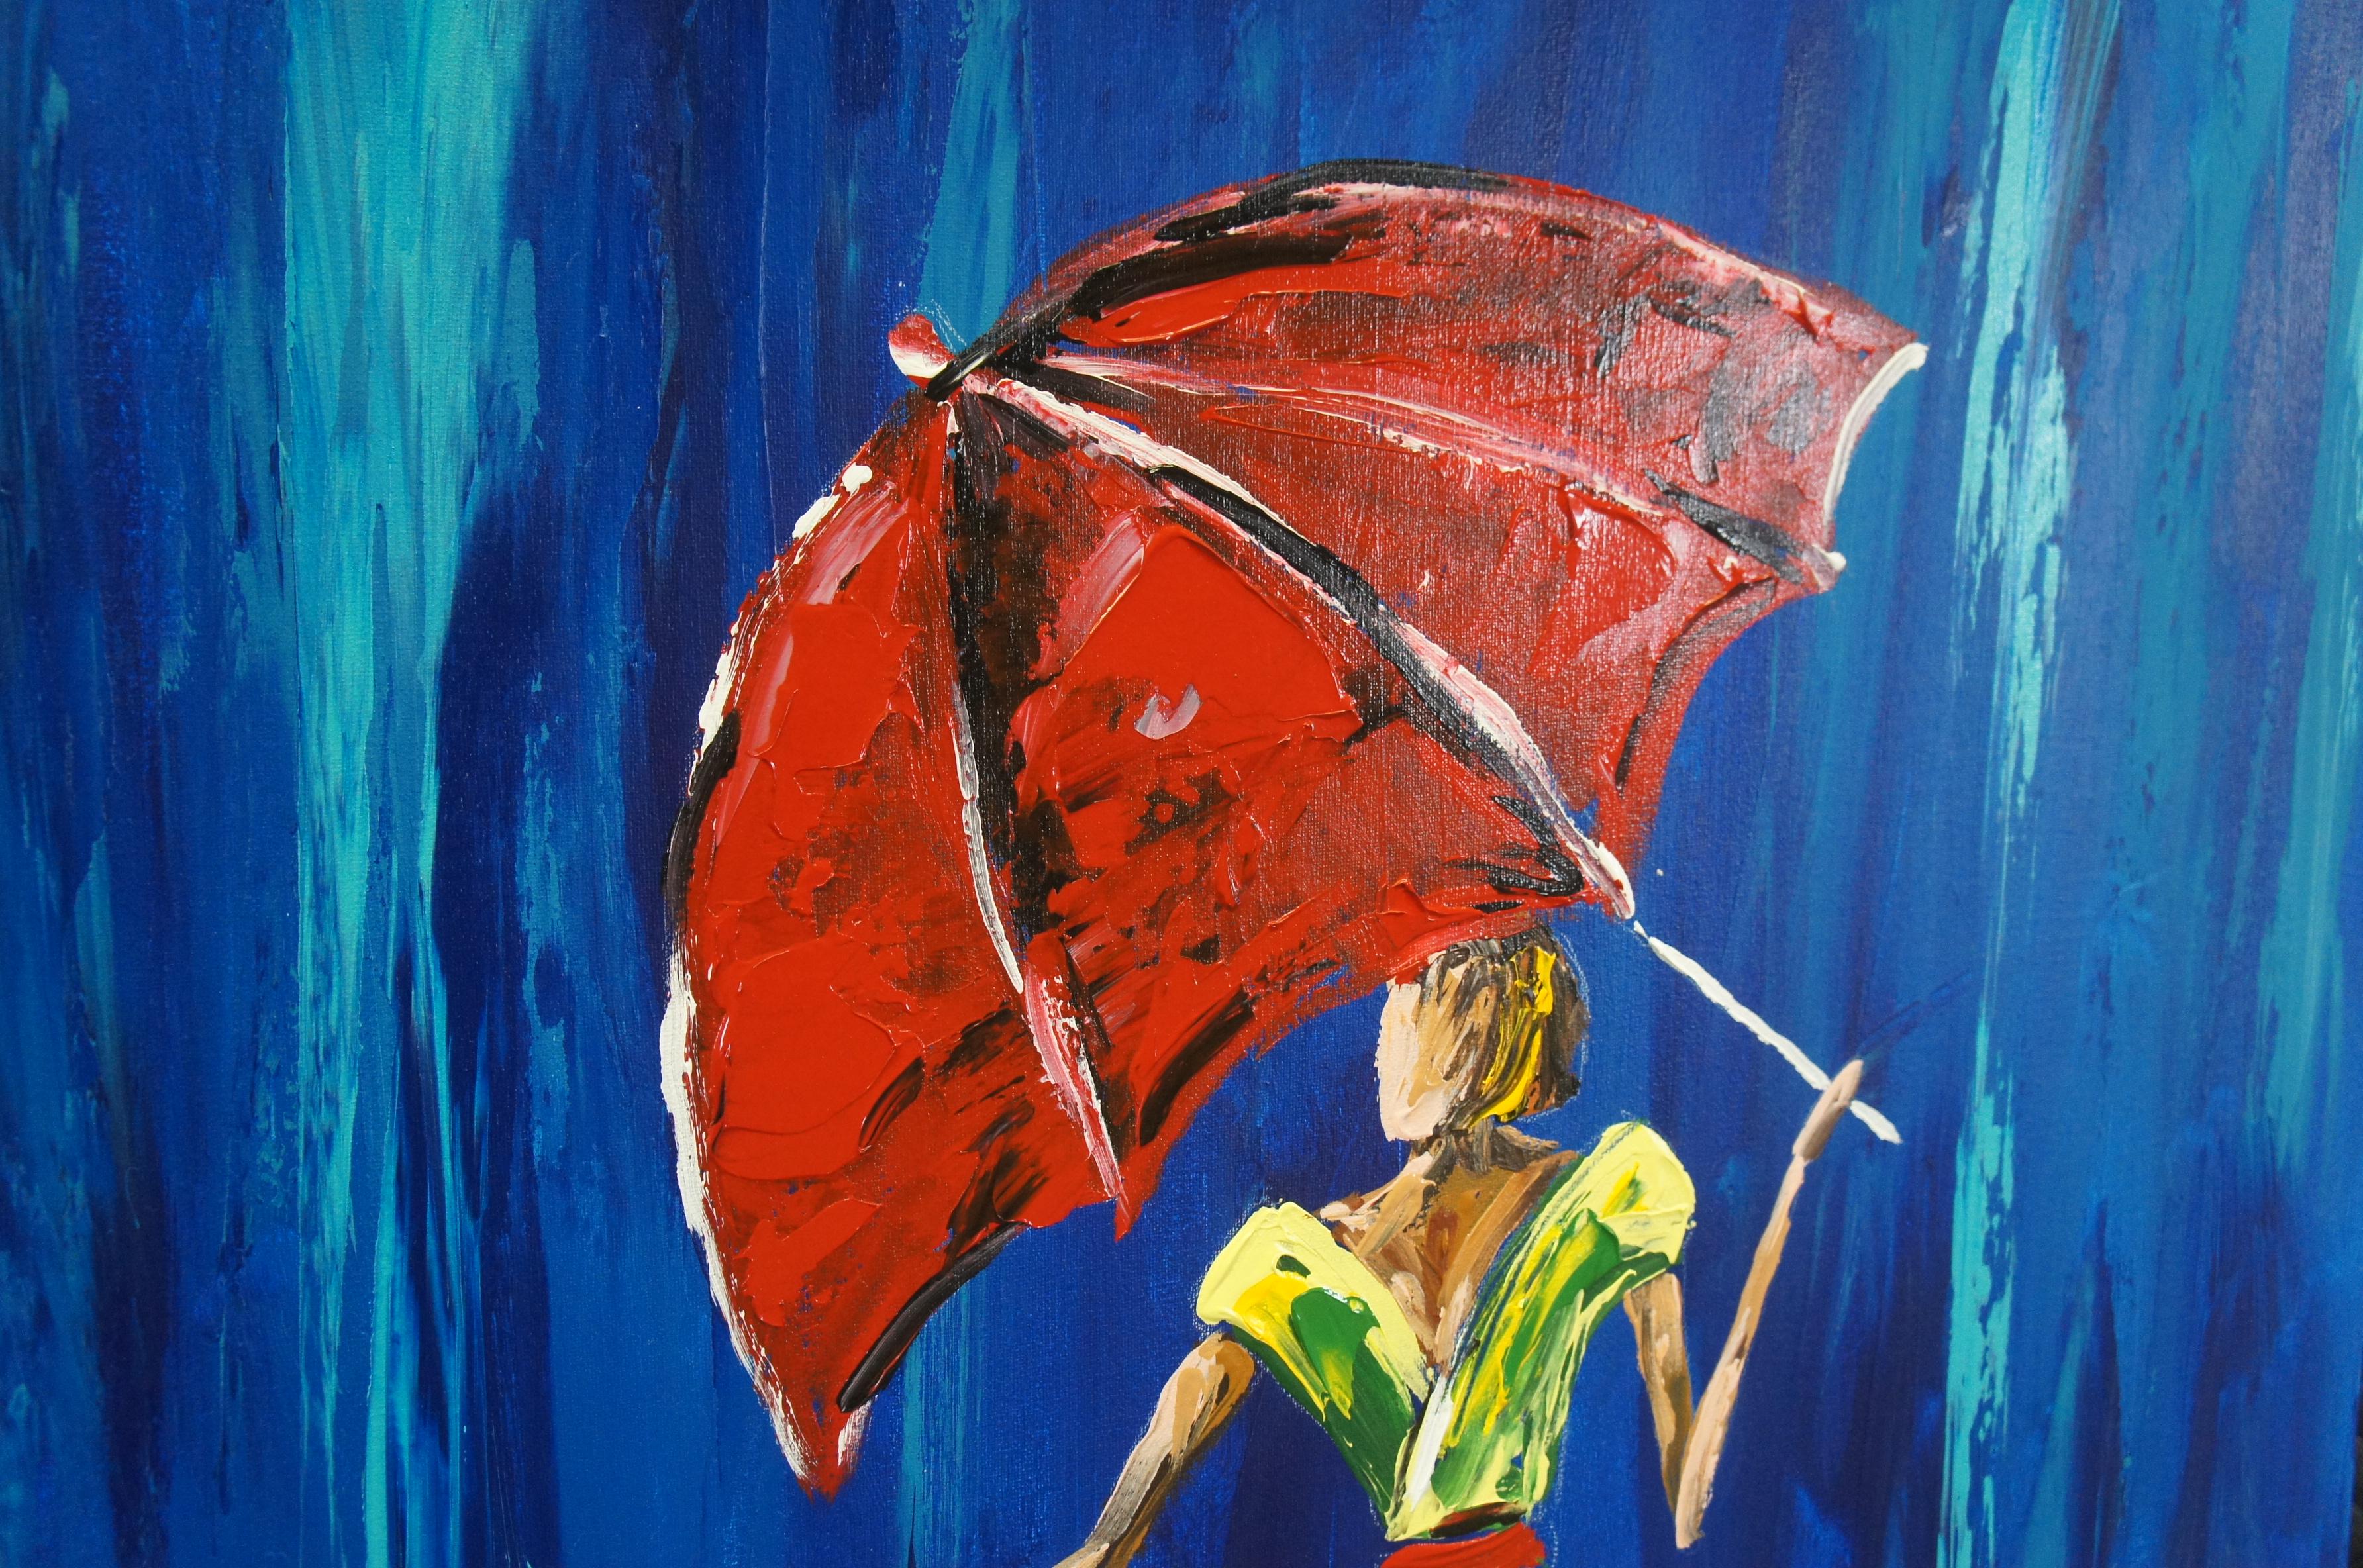 2 Michael Tolleson Robles Frauen beim Spazierengehen mit Regenschirmen, Ölgemälde 36